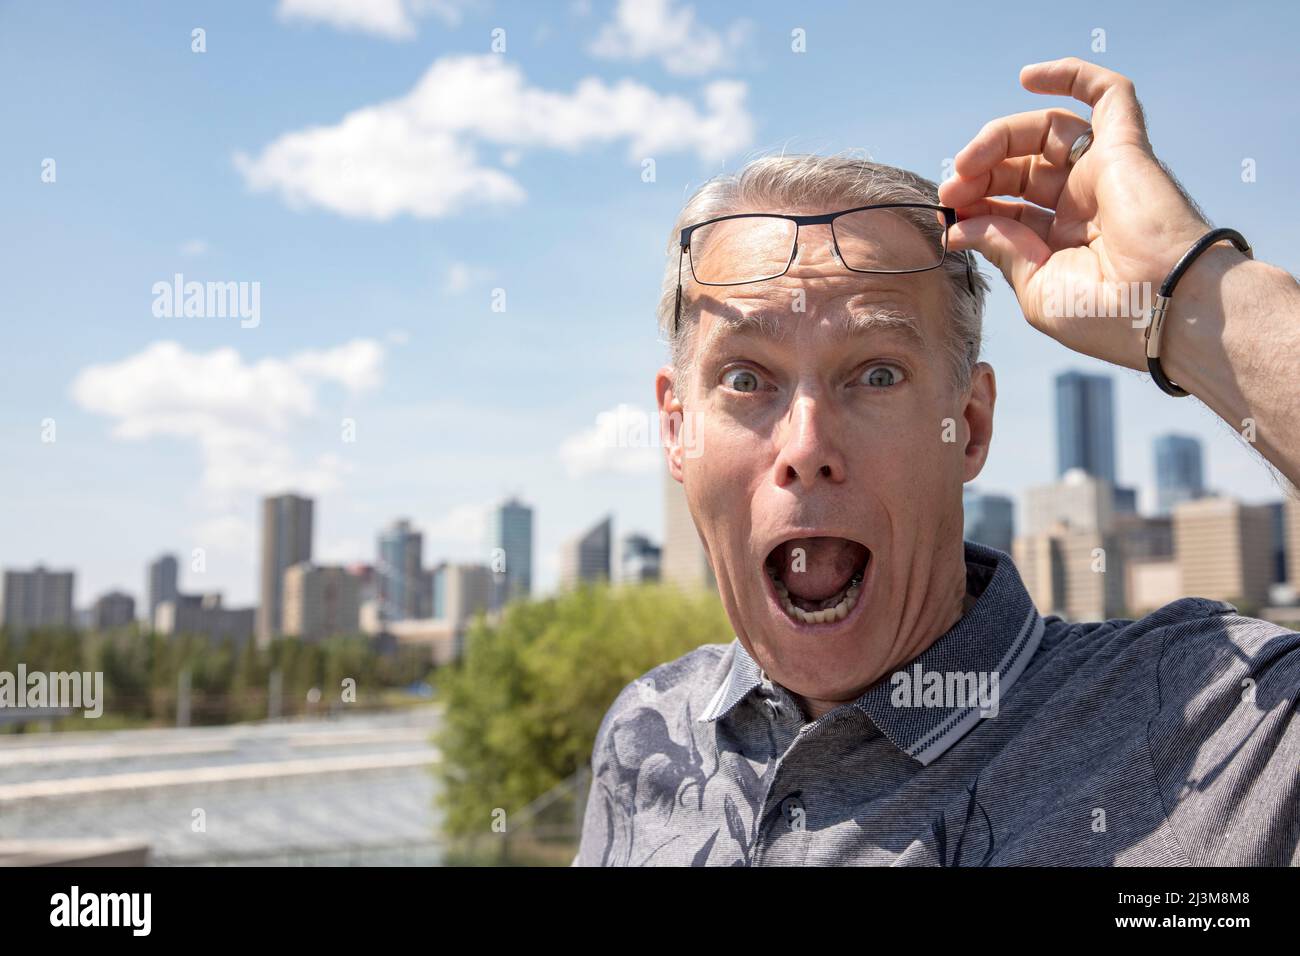 Älterer Mann, der im Freien steht und seine Brille hochhebt, um mit einem überraschenden Gesichtsausdruck auf die Kamera zu blicken; Edmonton, Alberta, Kanada Stockfoto